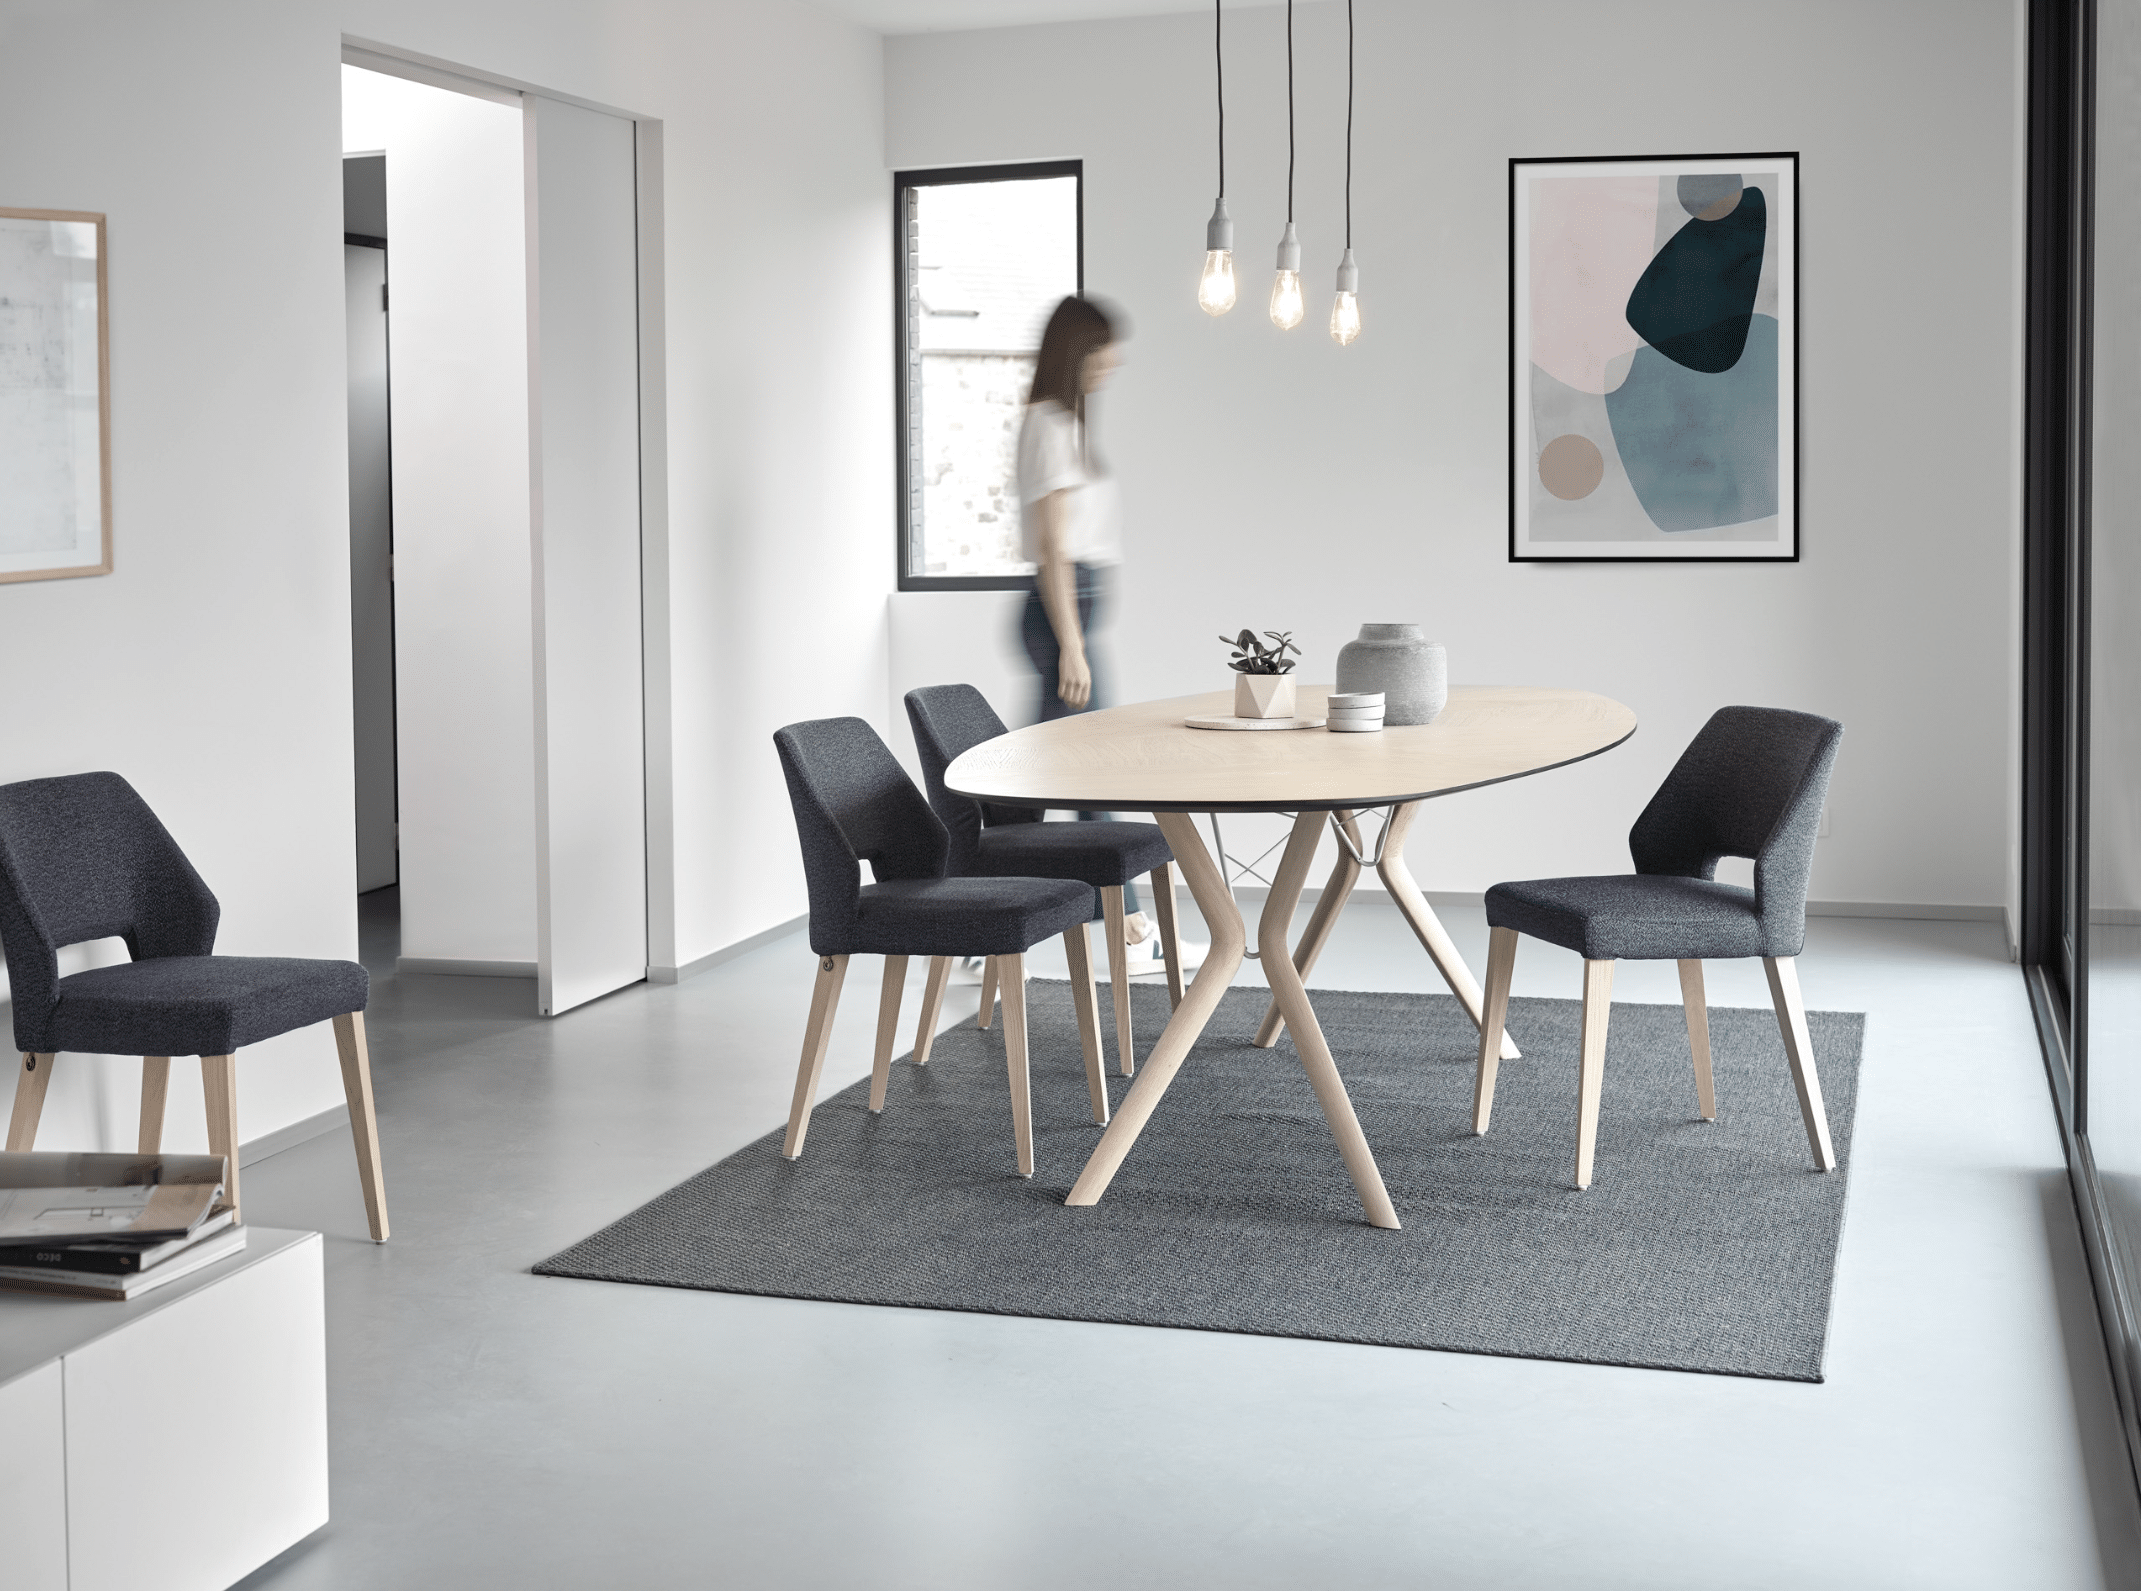 WOHNHAUS Grill & Ronacher zeigt eine Essgruppe von Mobitec Systems, bestehend aus einem Esstisch aus Holz und Stühlen mit Stoffbezug.